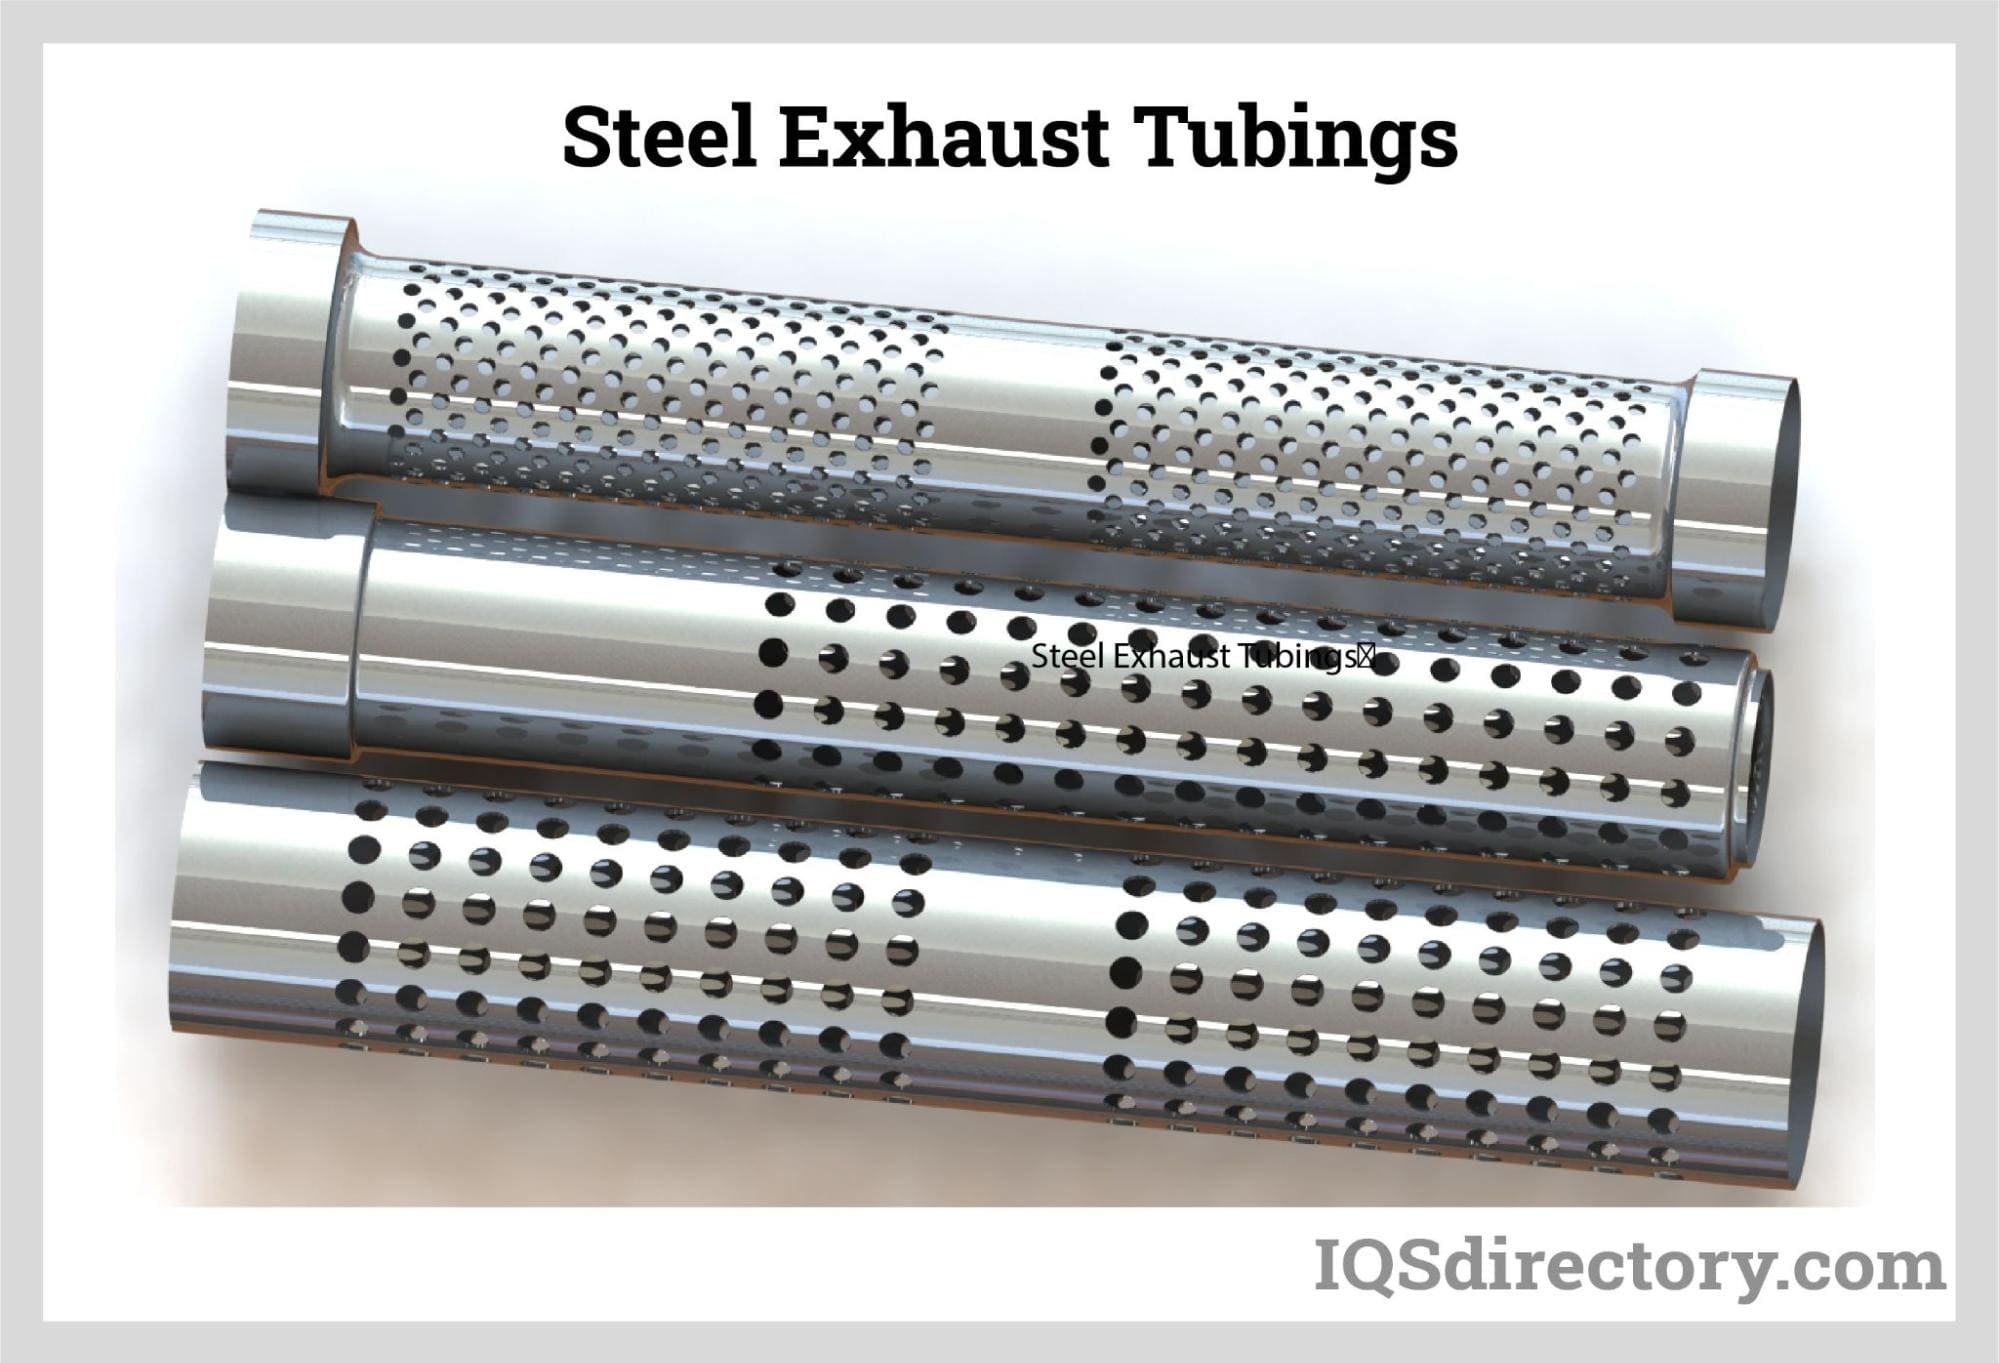 Steel Exhaust Tubings